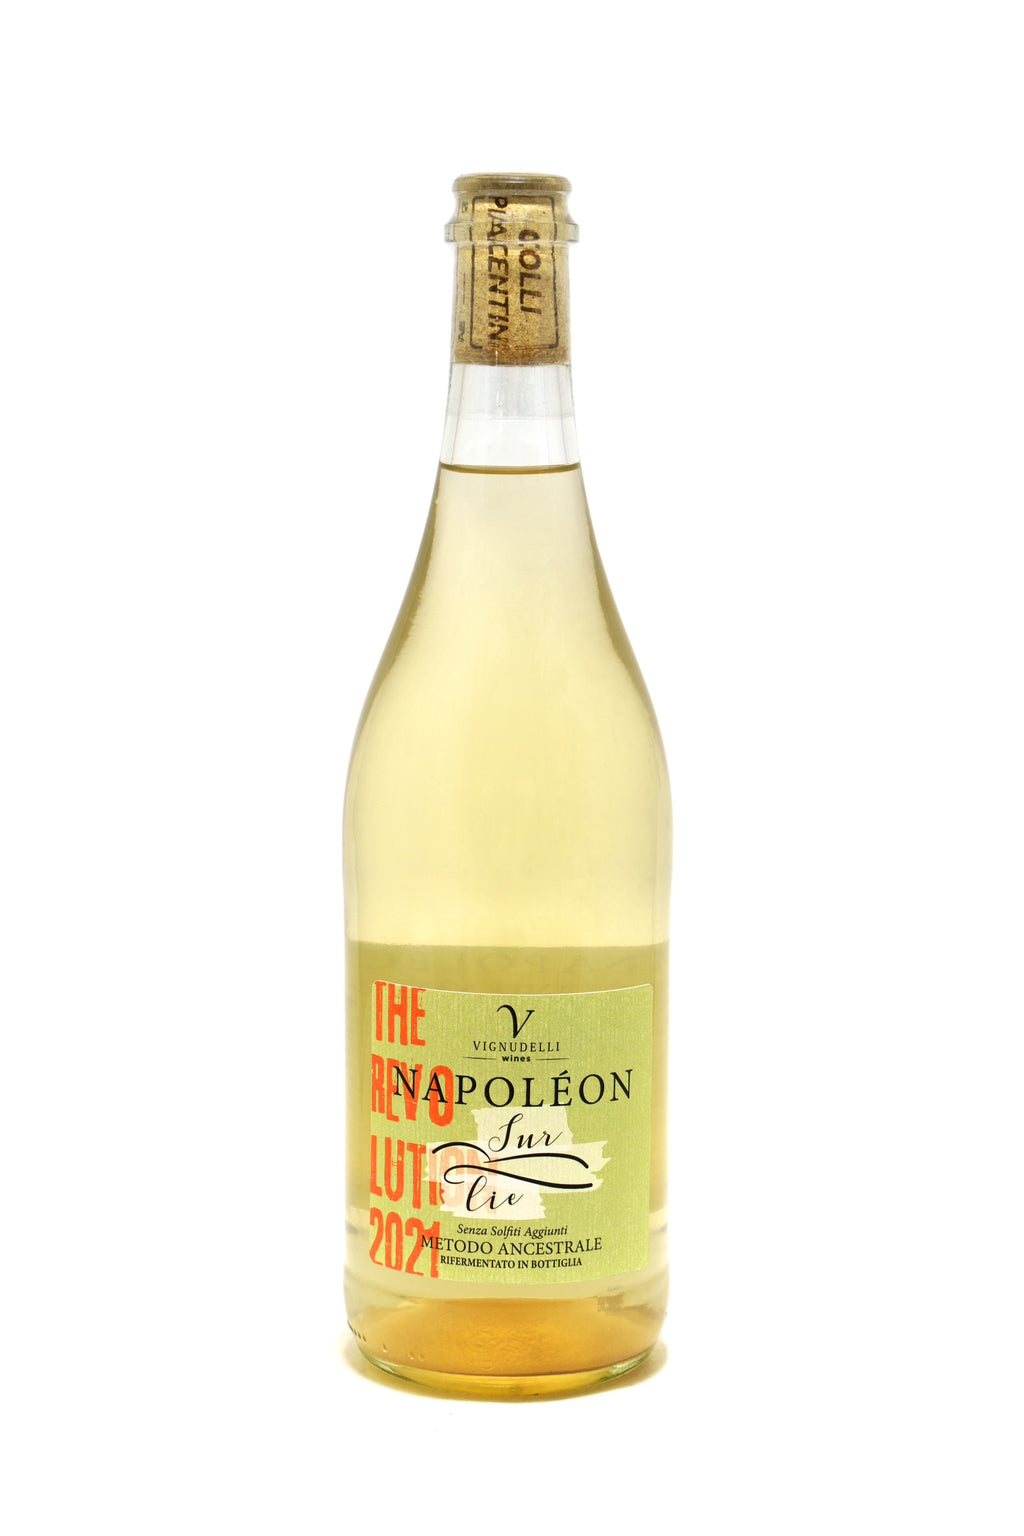 Napoleon Sur Lie harvest 2021 Vignudelli Wines